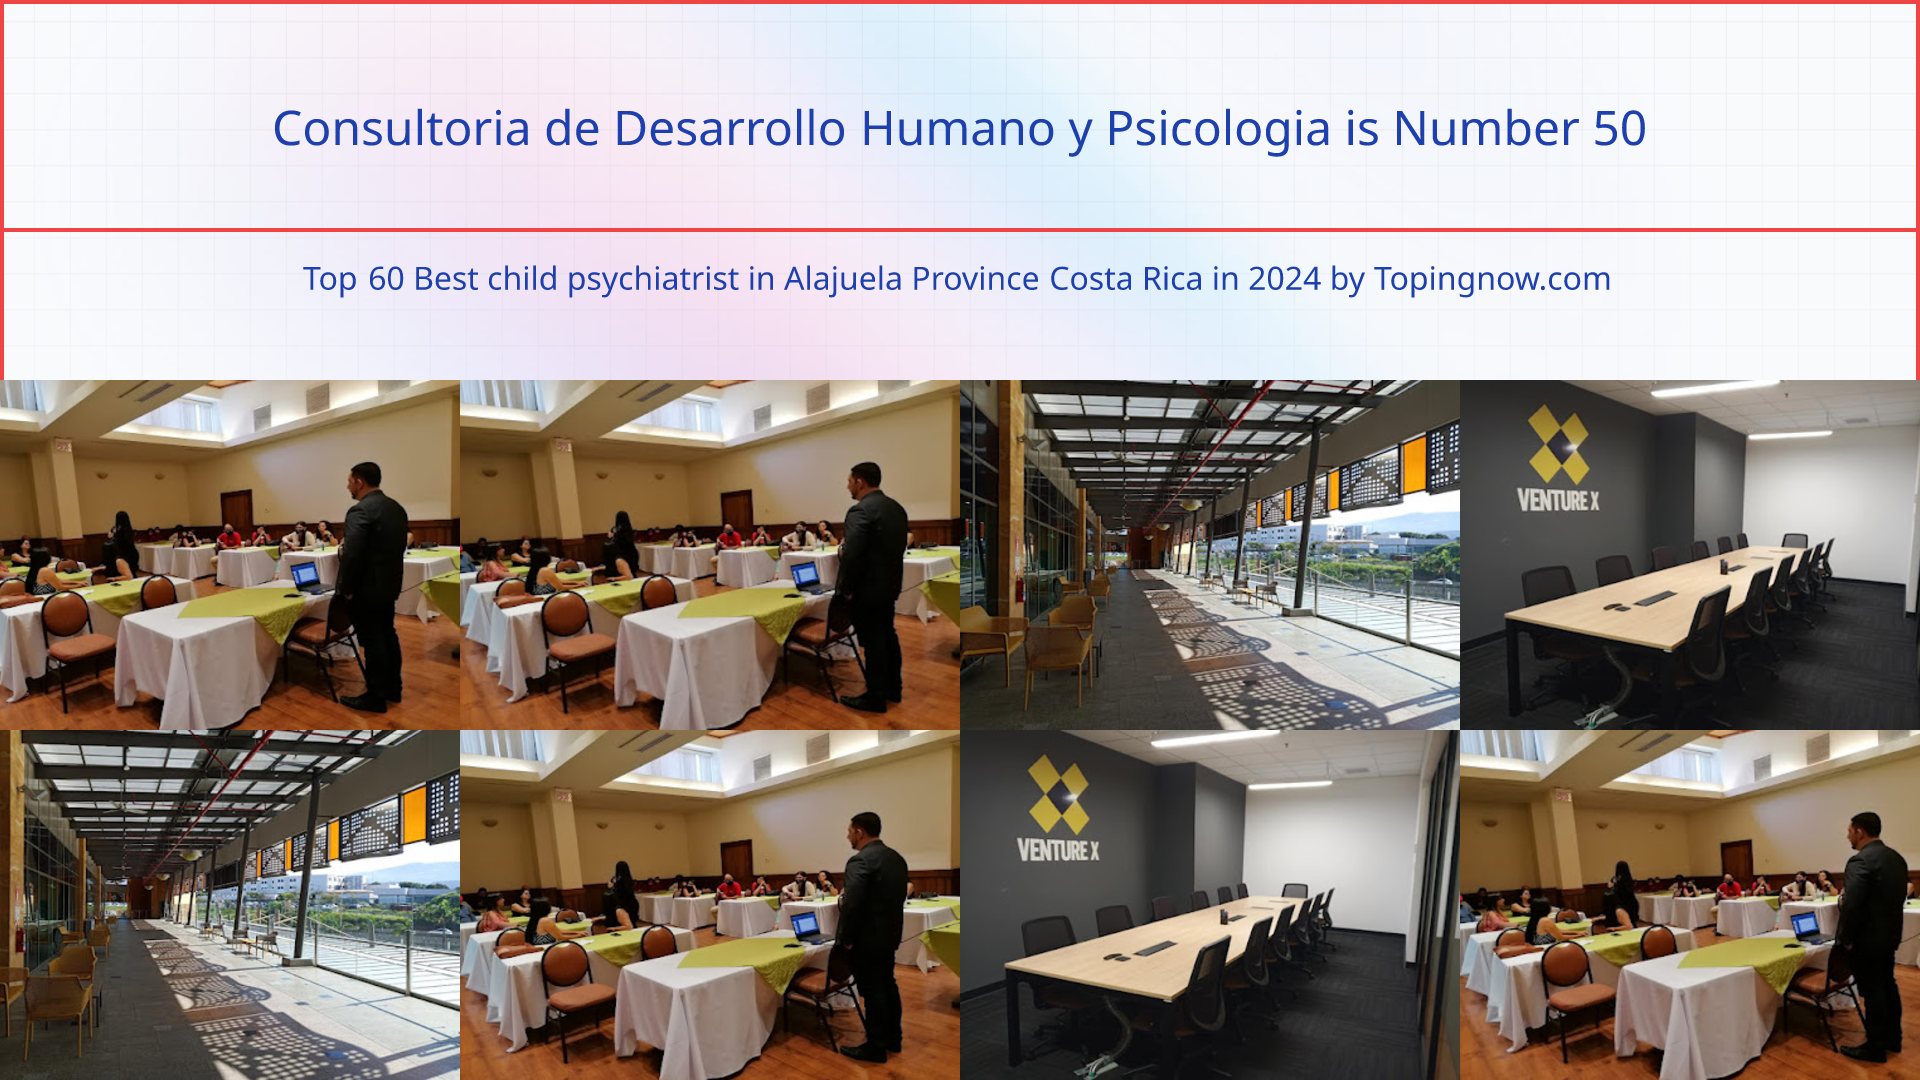 Consultoria de Desarrollo Humano y Psicologia: Top 60 Best child psychiatrist in Alajuela Province Costa Rica in 2024